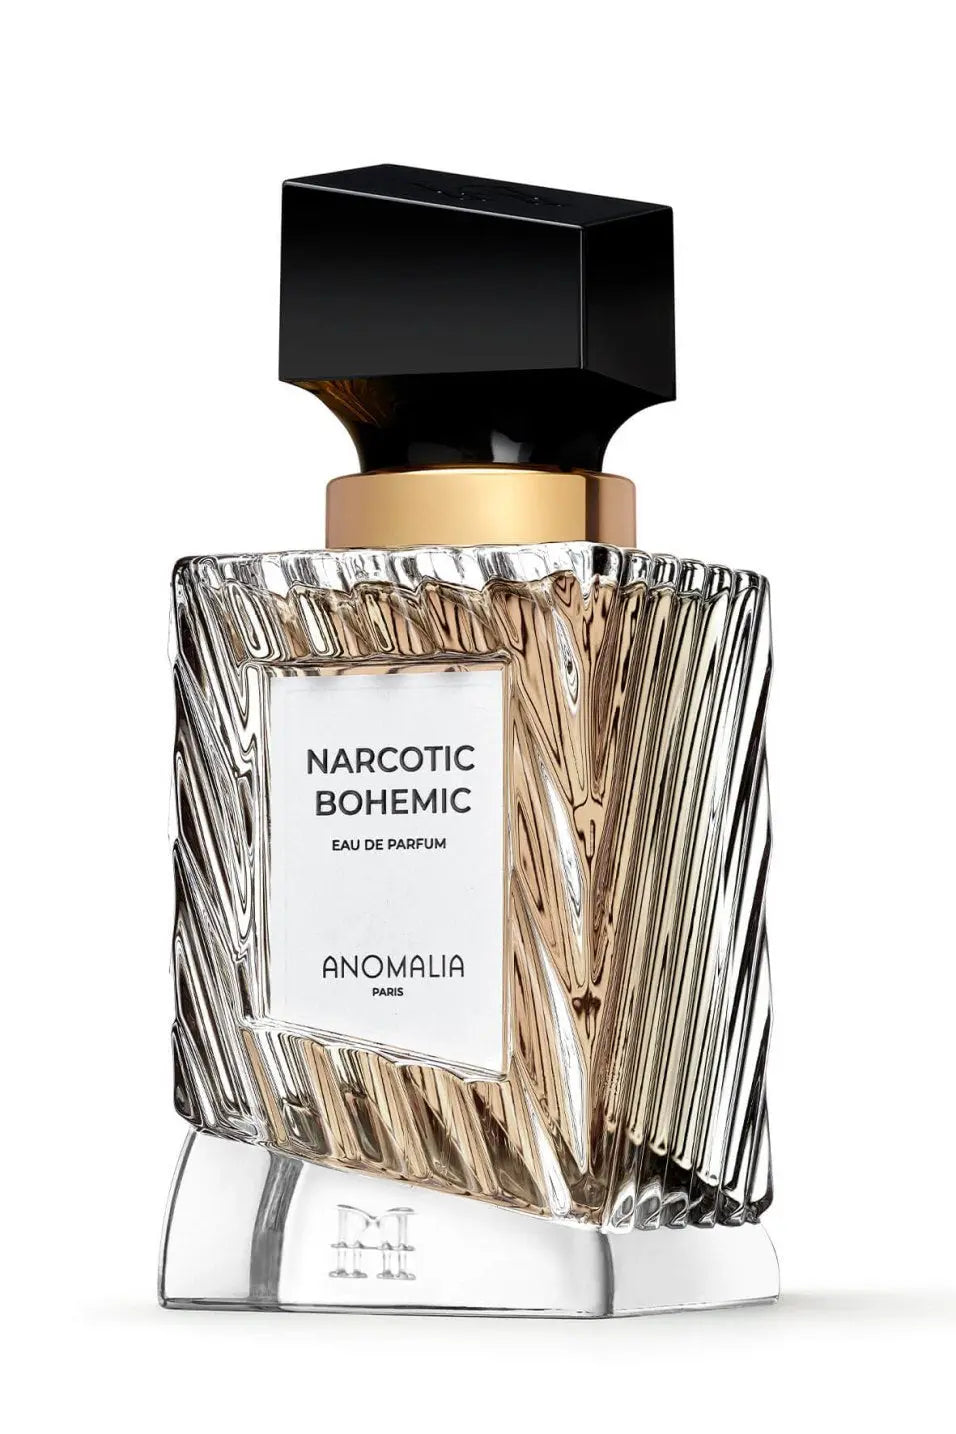 Narcotic Bohemic eau de parfum - 70 ml